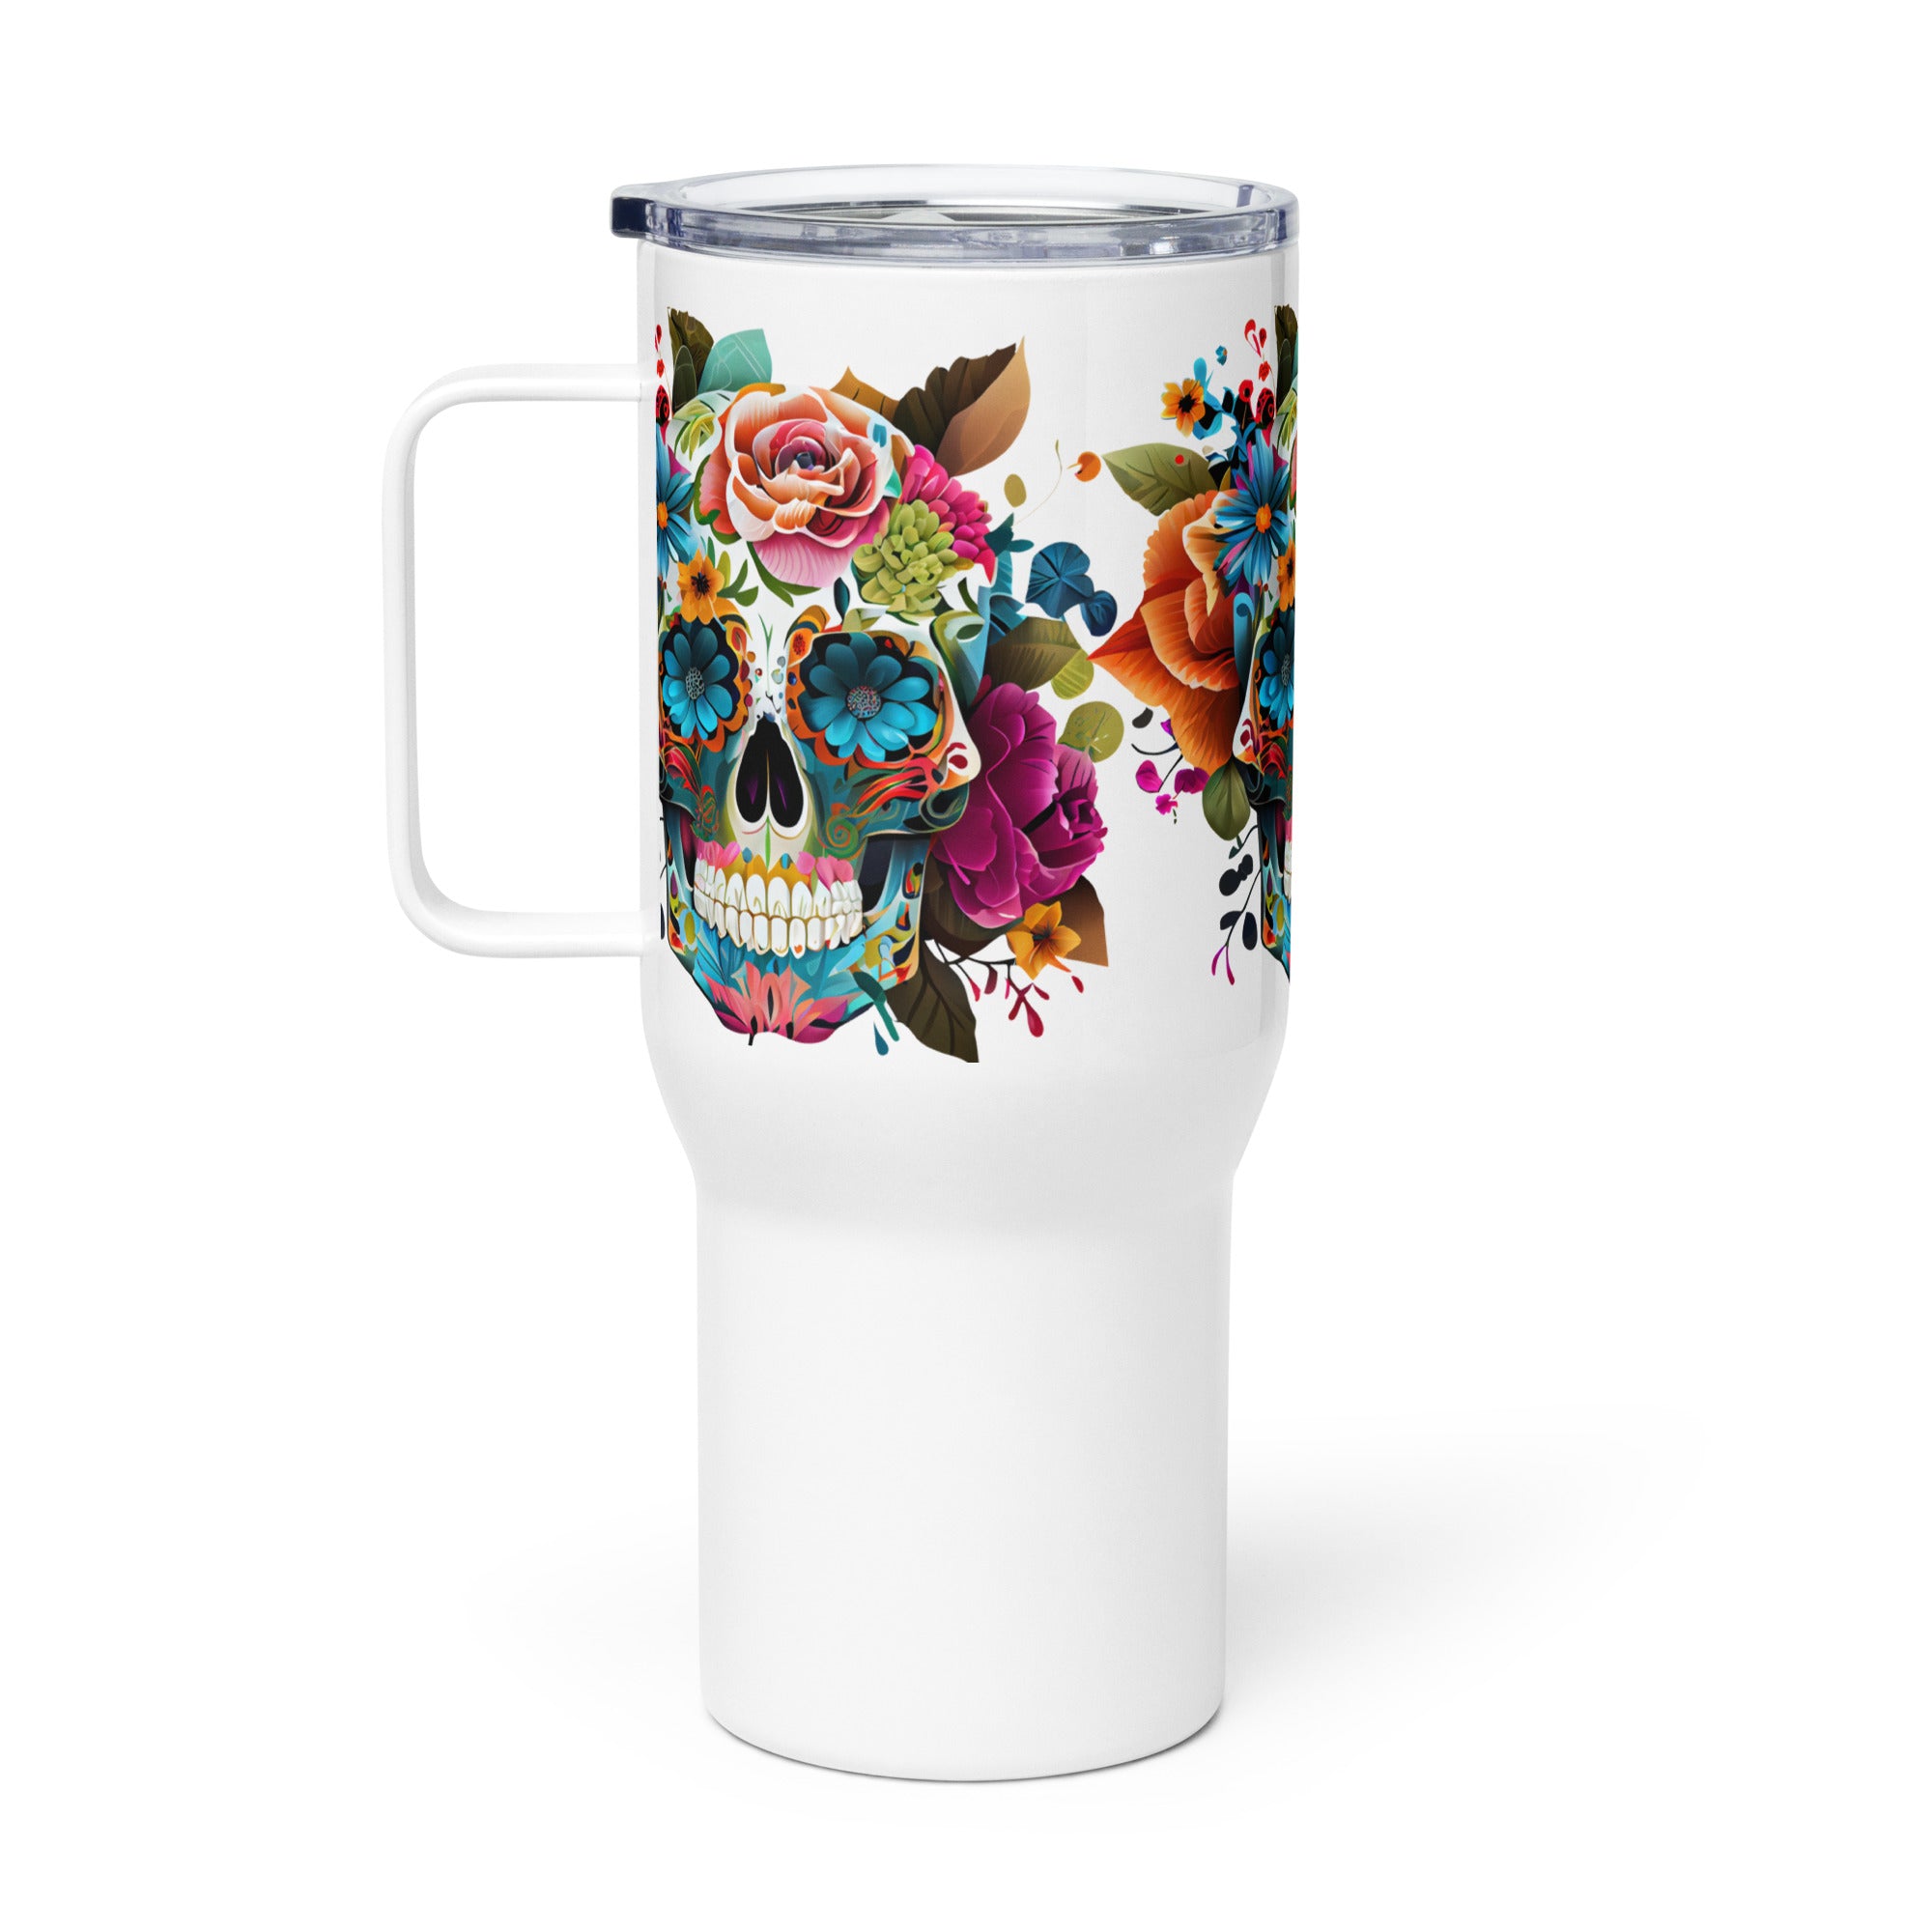 Travel mug with a handle, Coffee Mug, Skeleton Tumbler, Tea, Gift